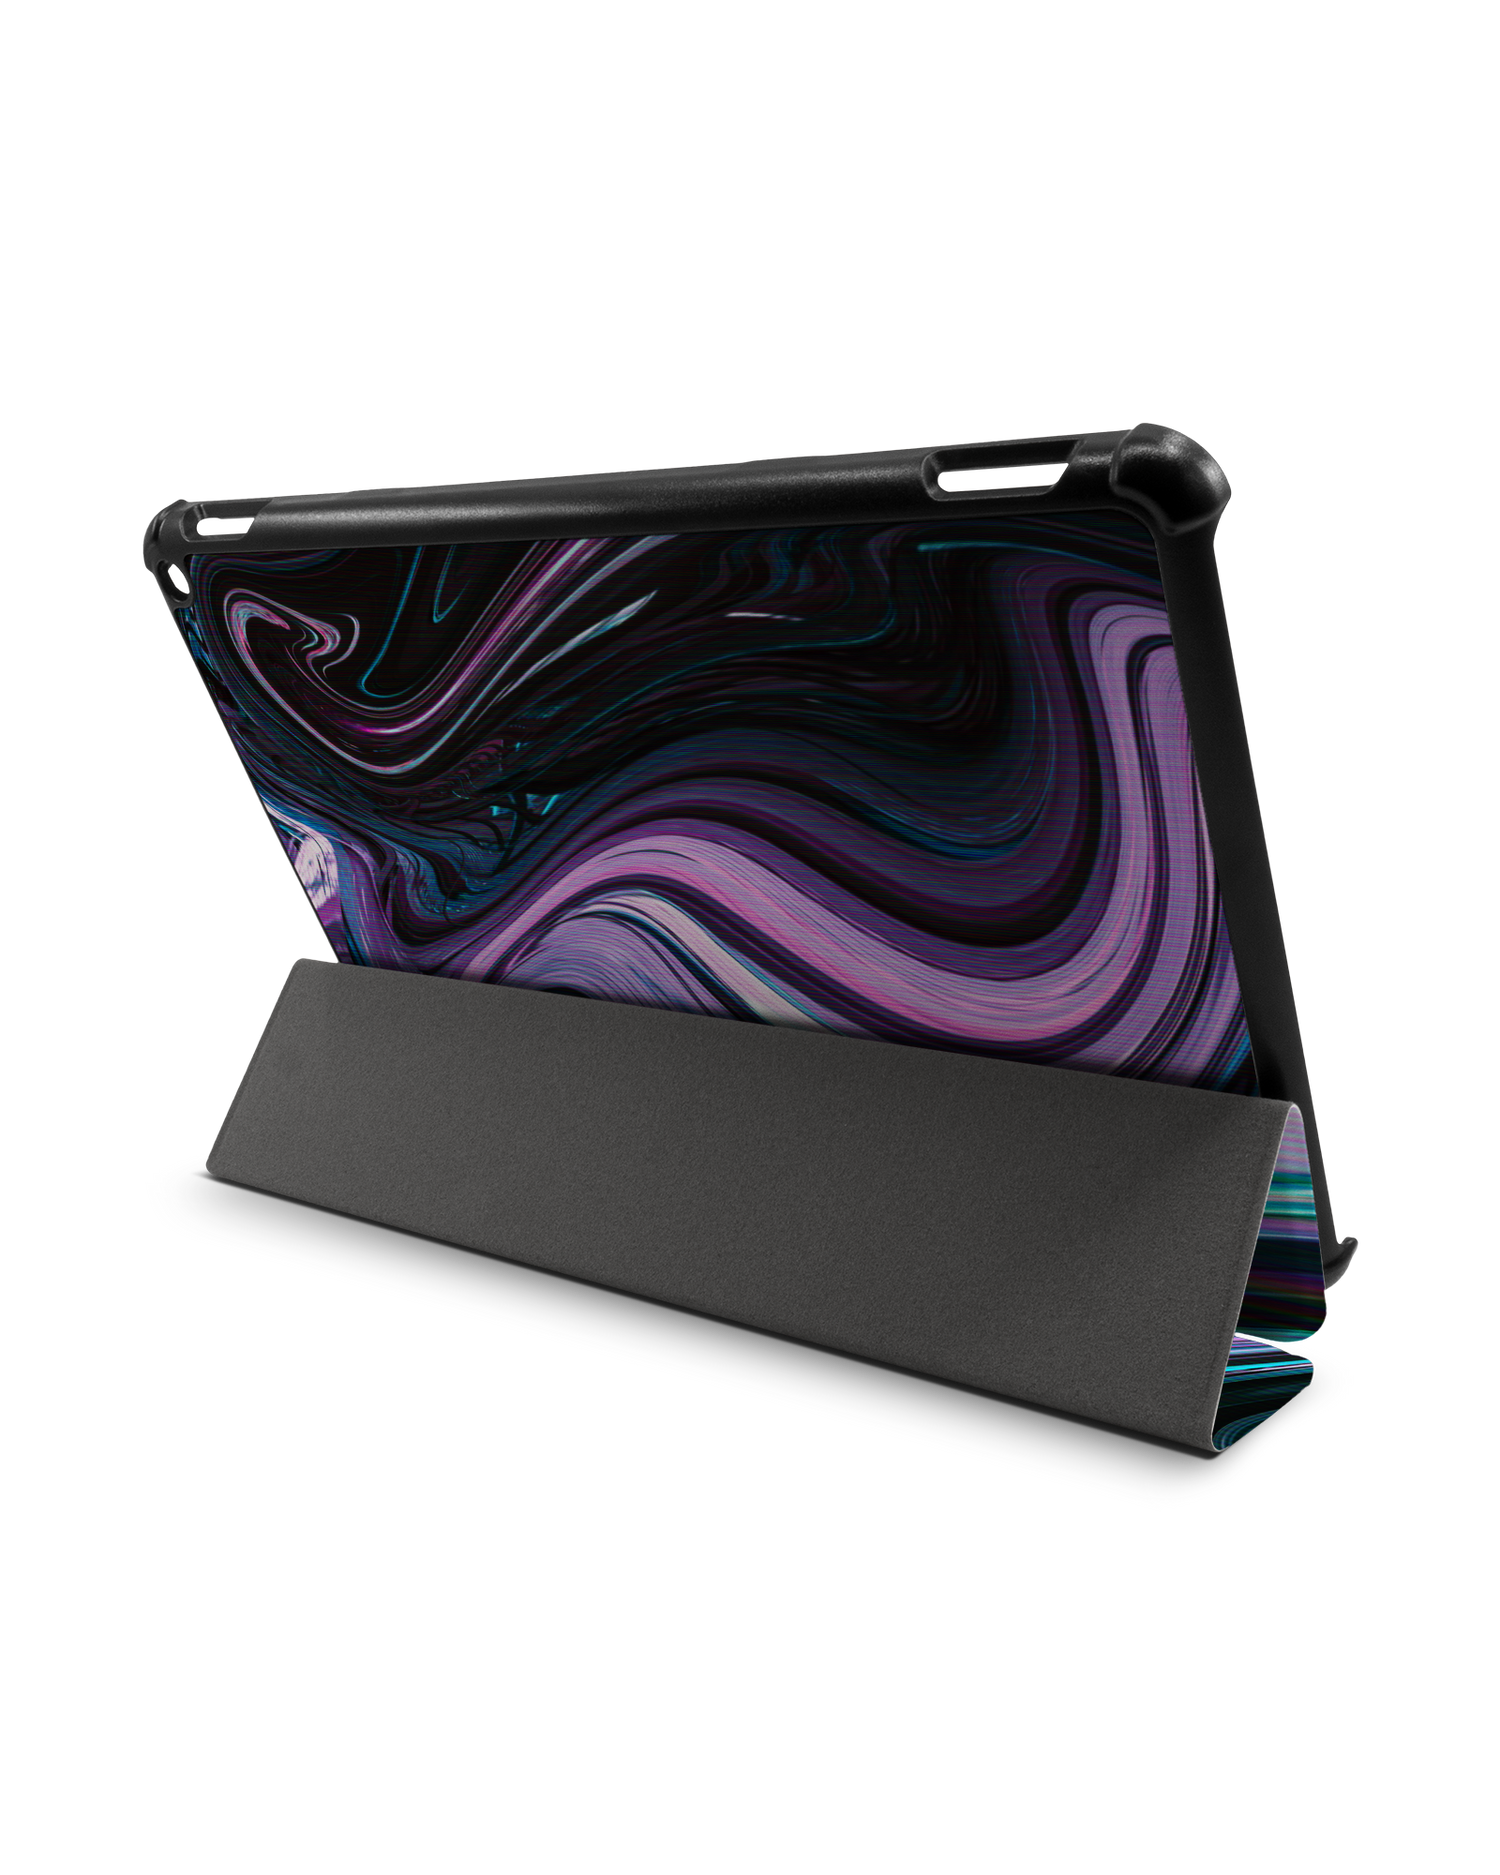 Digital Swirl Tablet Smart Case für Amazon Fire HD 10 (2021): Aufgestellt im Querformat